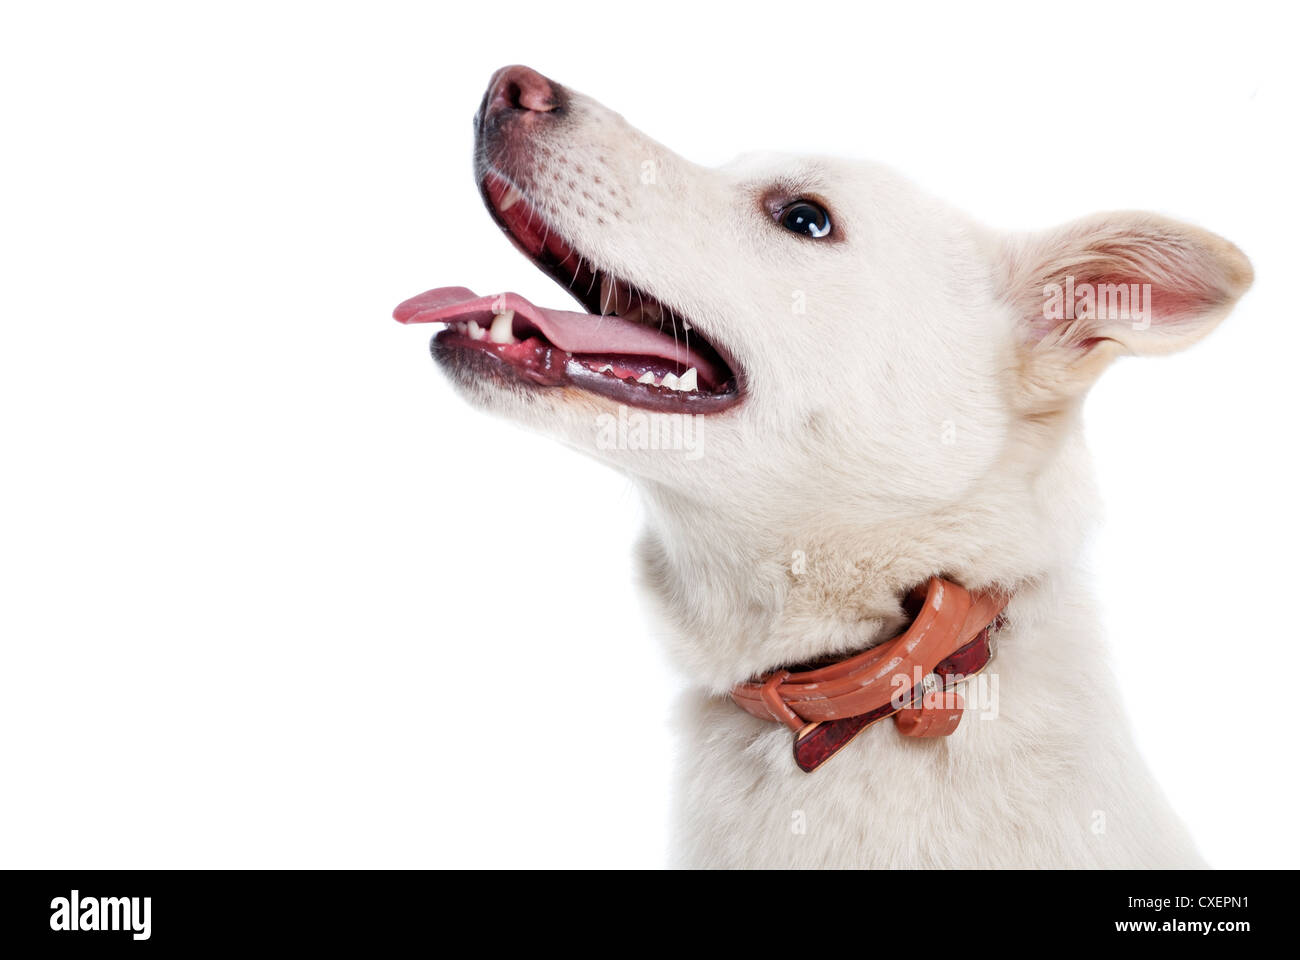 White dog on white background Stock Photo